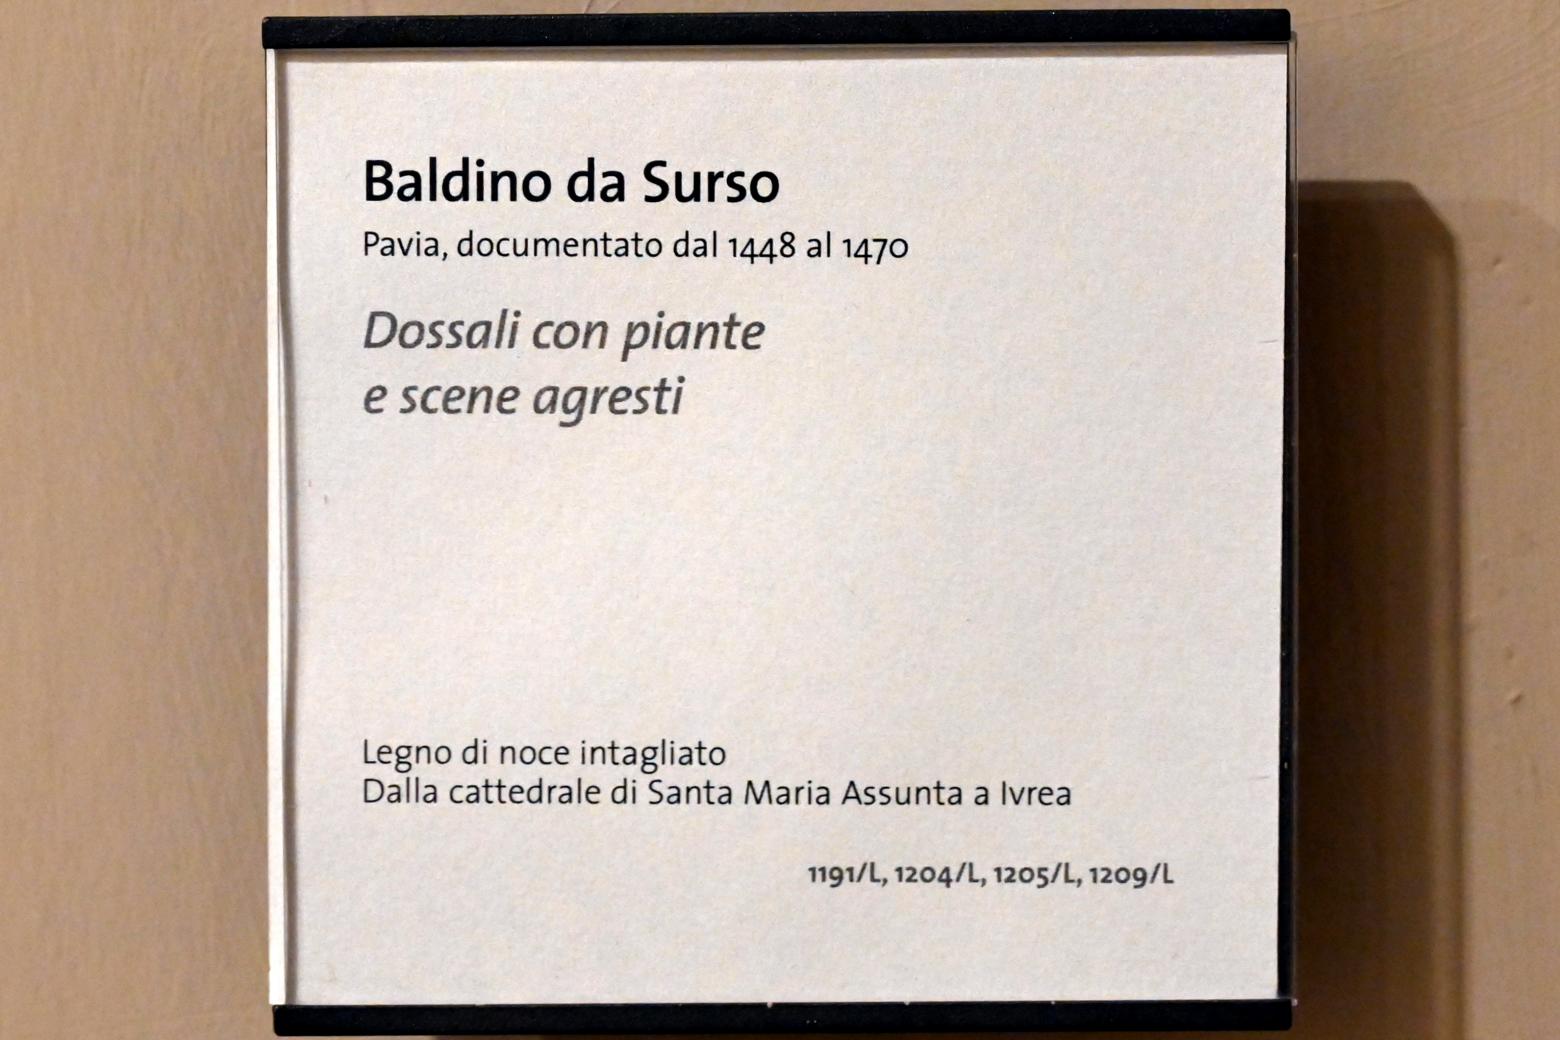 Baldino da Surso (Undatiert), Retabeln mit Pflanzen und ländlichen Szenen, Turin, Museo civico d'arte antica, Saal 7, Undatiert, Bild 2/2